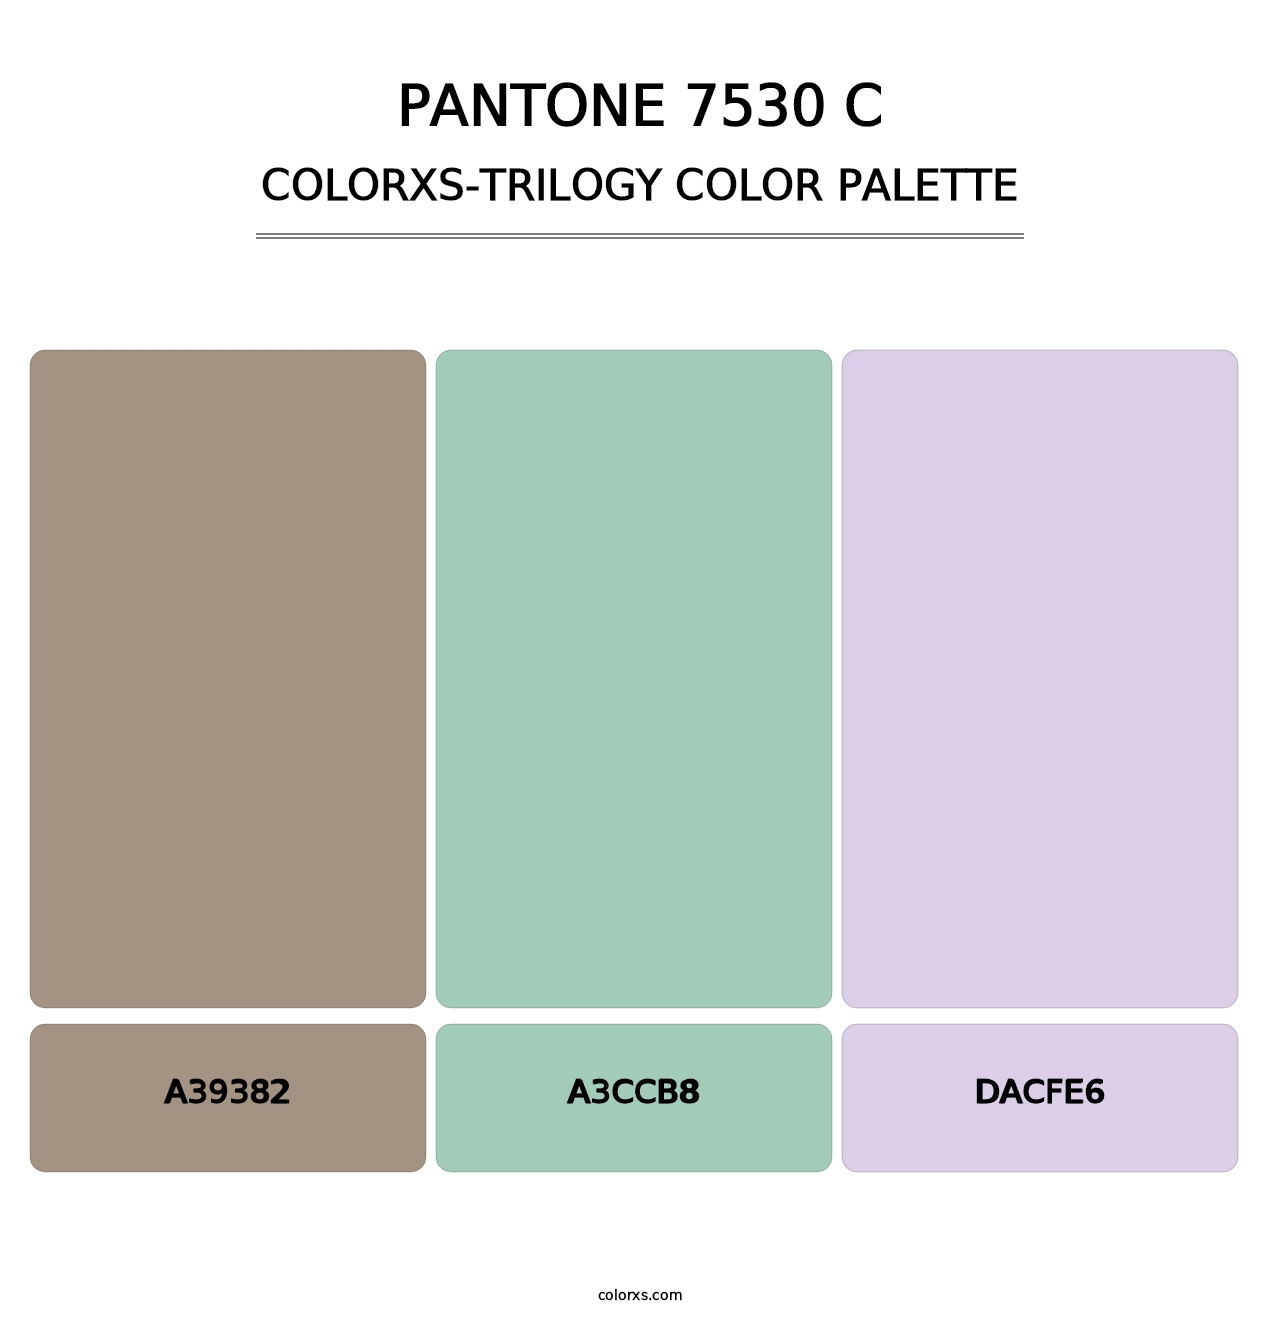 PANTONE 7530 C - Colorxs Trilogy Palette